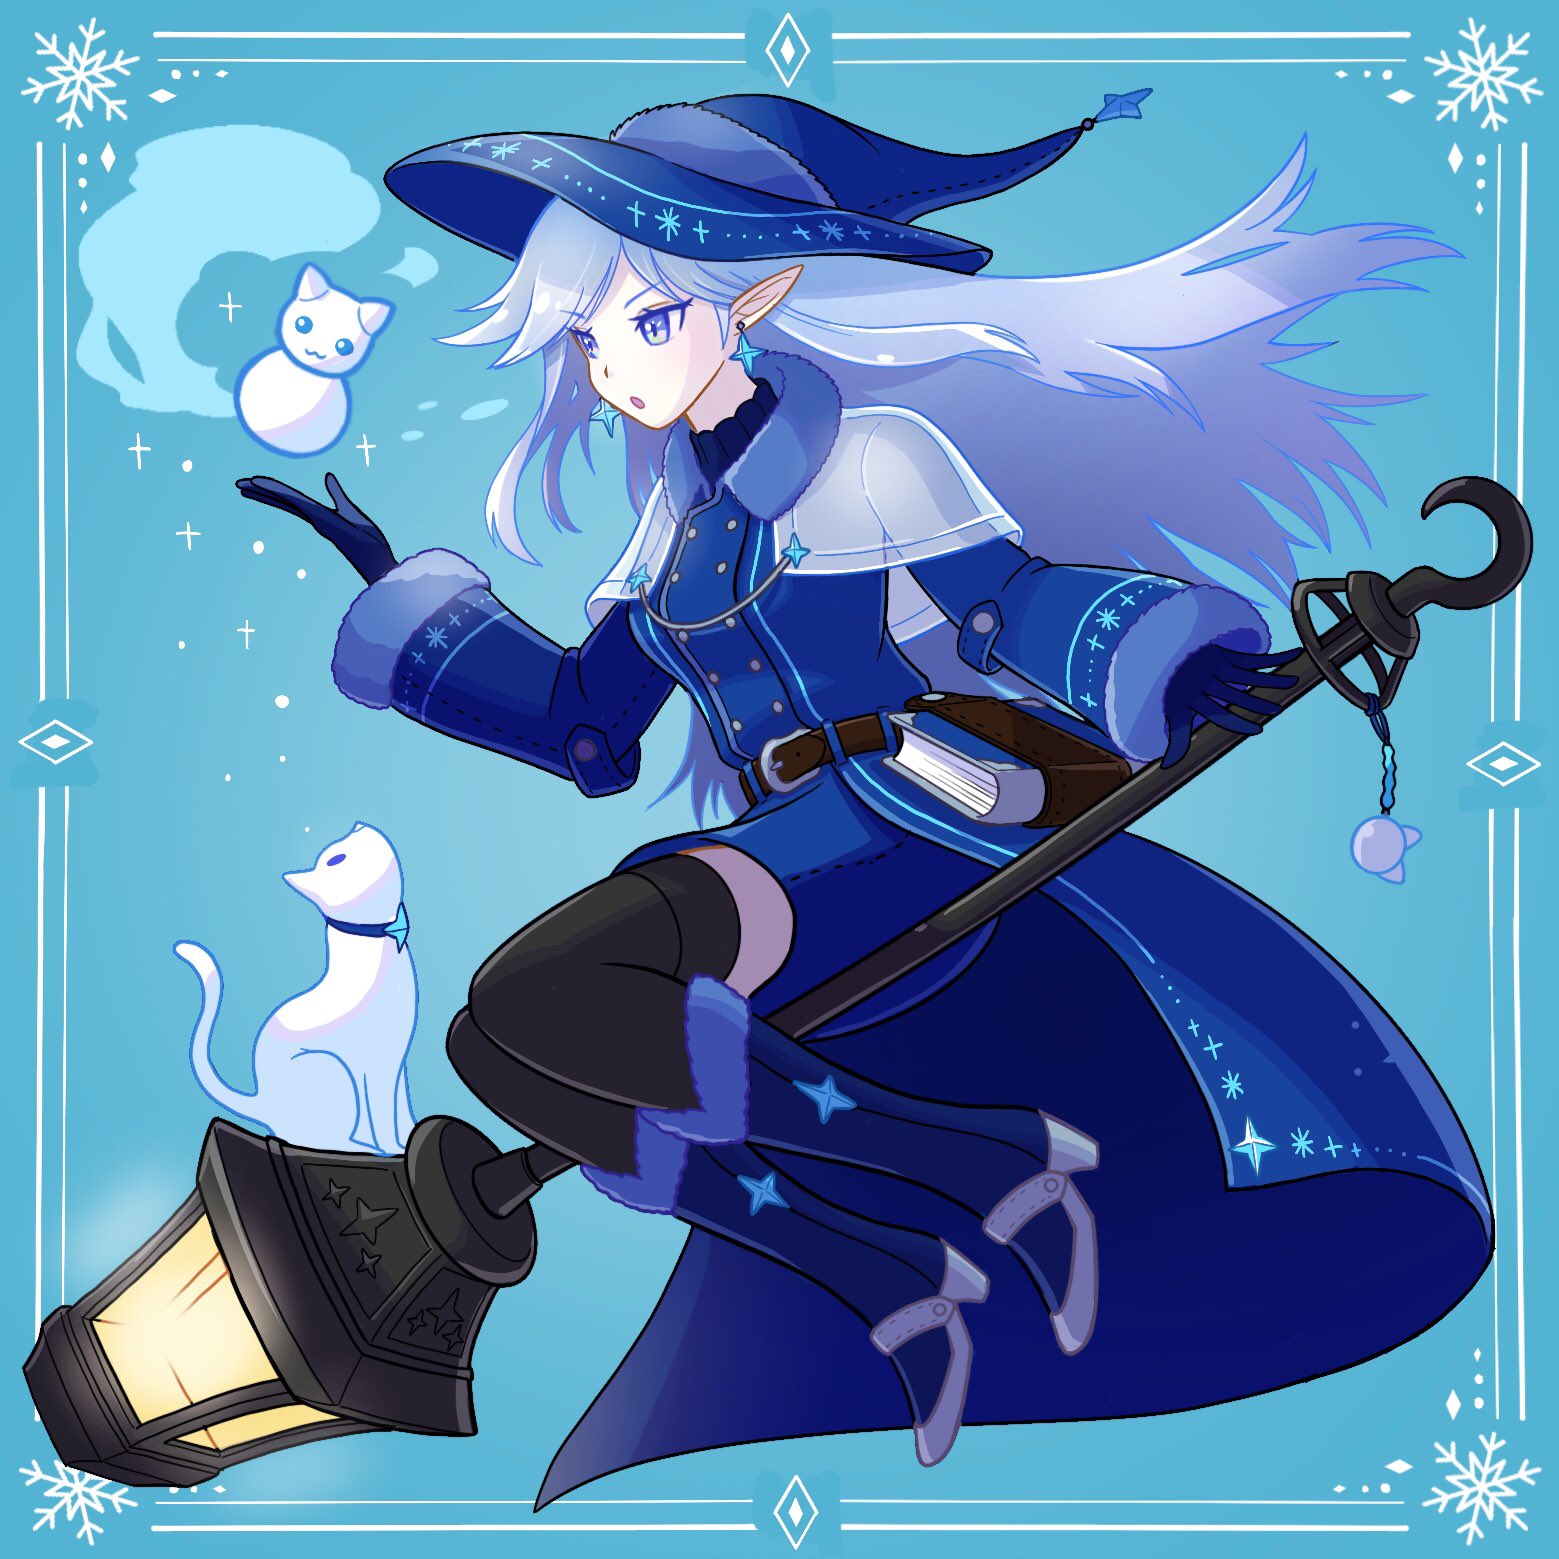 Twitter 上的 バクモン オリジナルで雪の魔女を描いてみました そろそろ肌寒くなってきたので ふと思いつきました イラスト好きな人と繋がりたい イラスト 魔女 雪 冬 ロングヘア かいてみた 宝石 魔法使い ほうき かわいい 青 ランタン 衣装